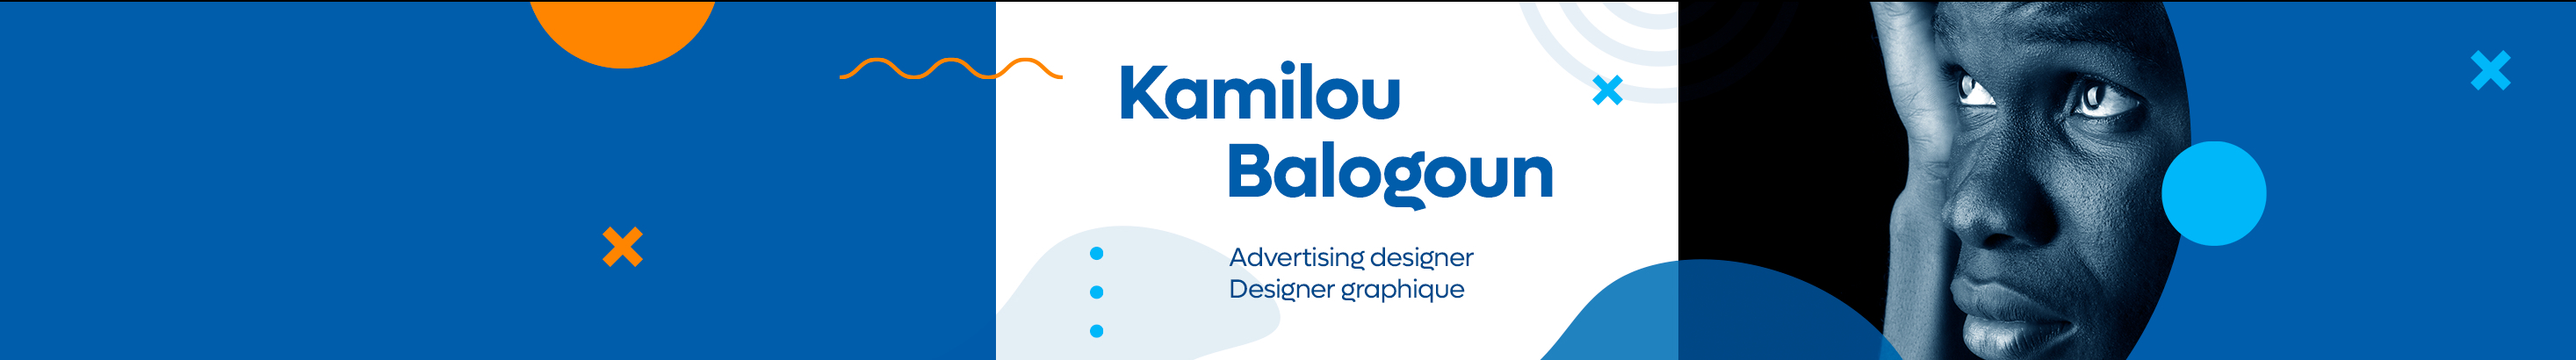 Баннер профиля Kamilou Balogoun